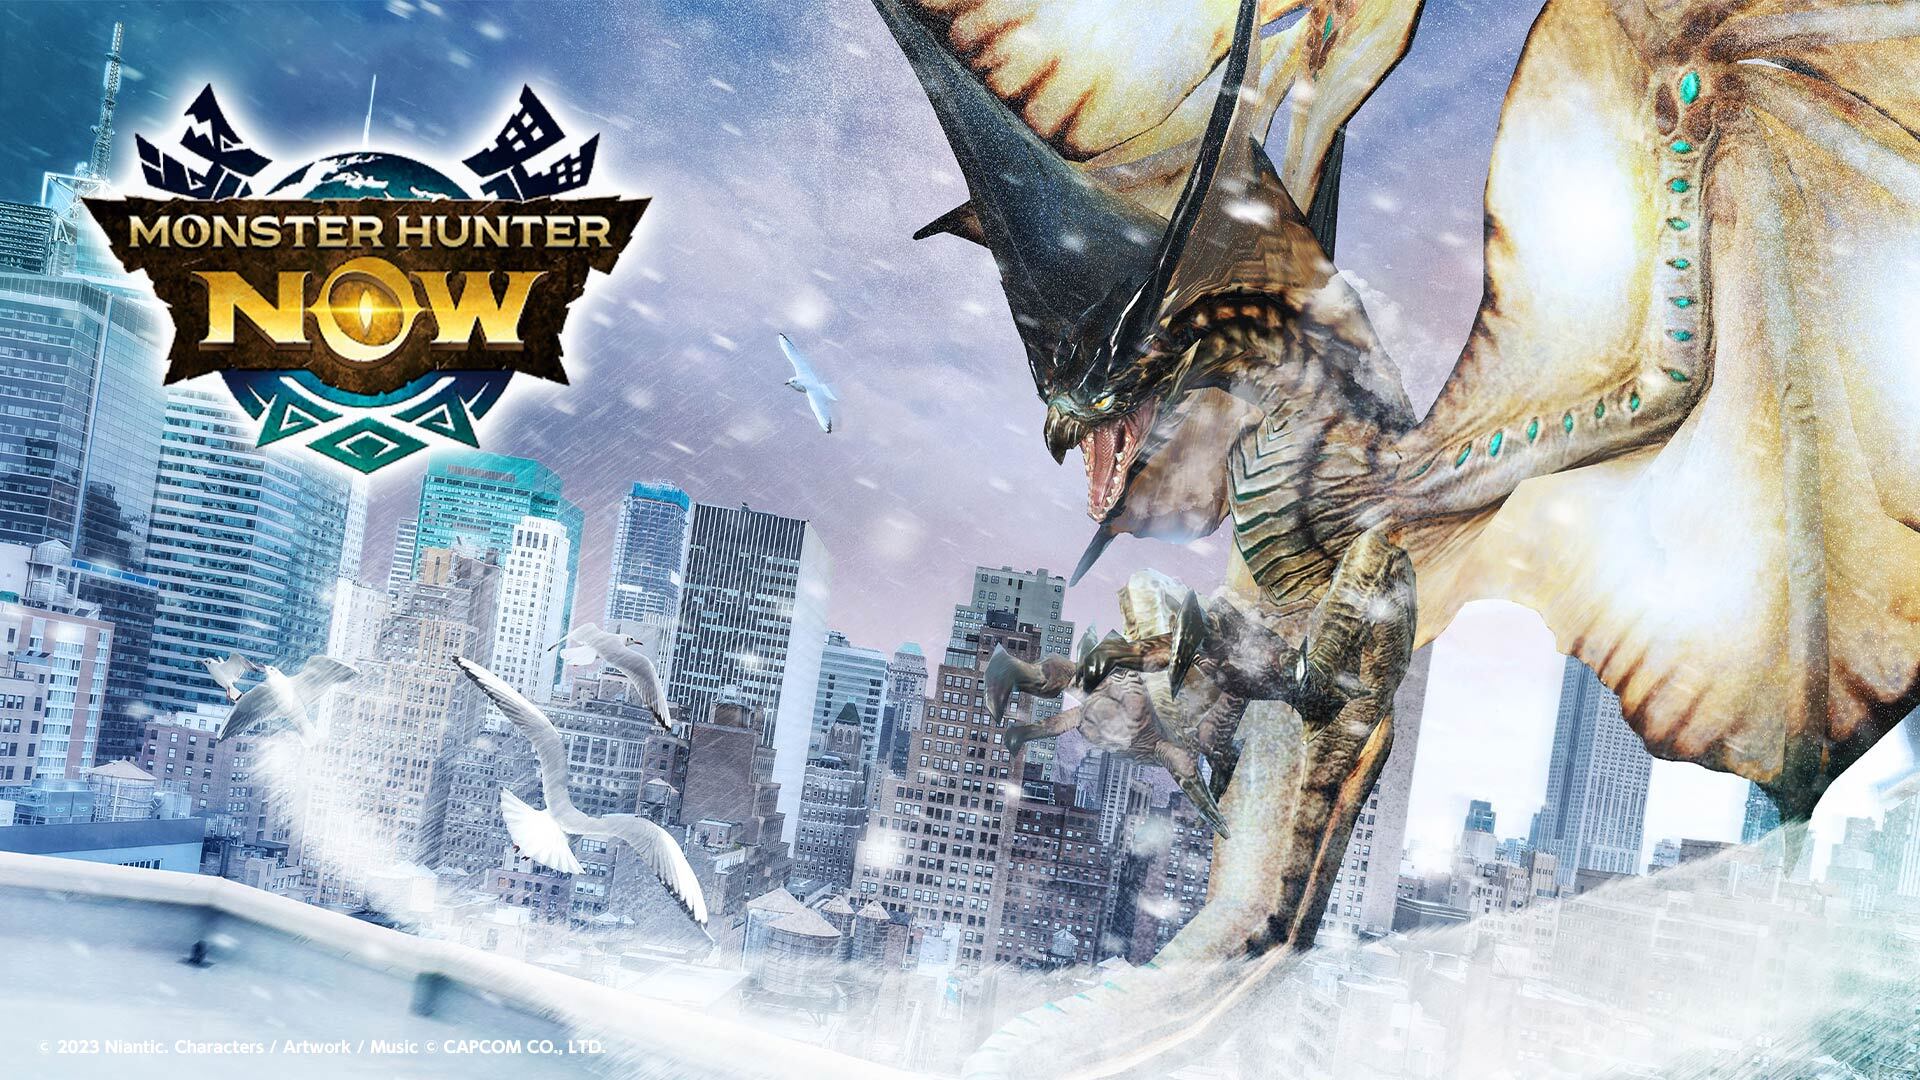 【モンハンNow】Monster Hunter Now 　 モンハン新作の情報を細かく見る考察会！